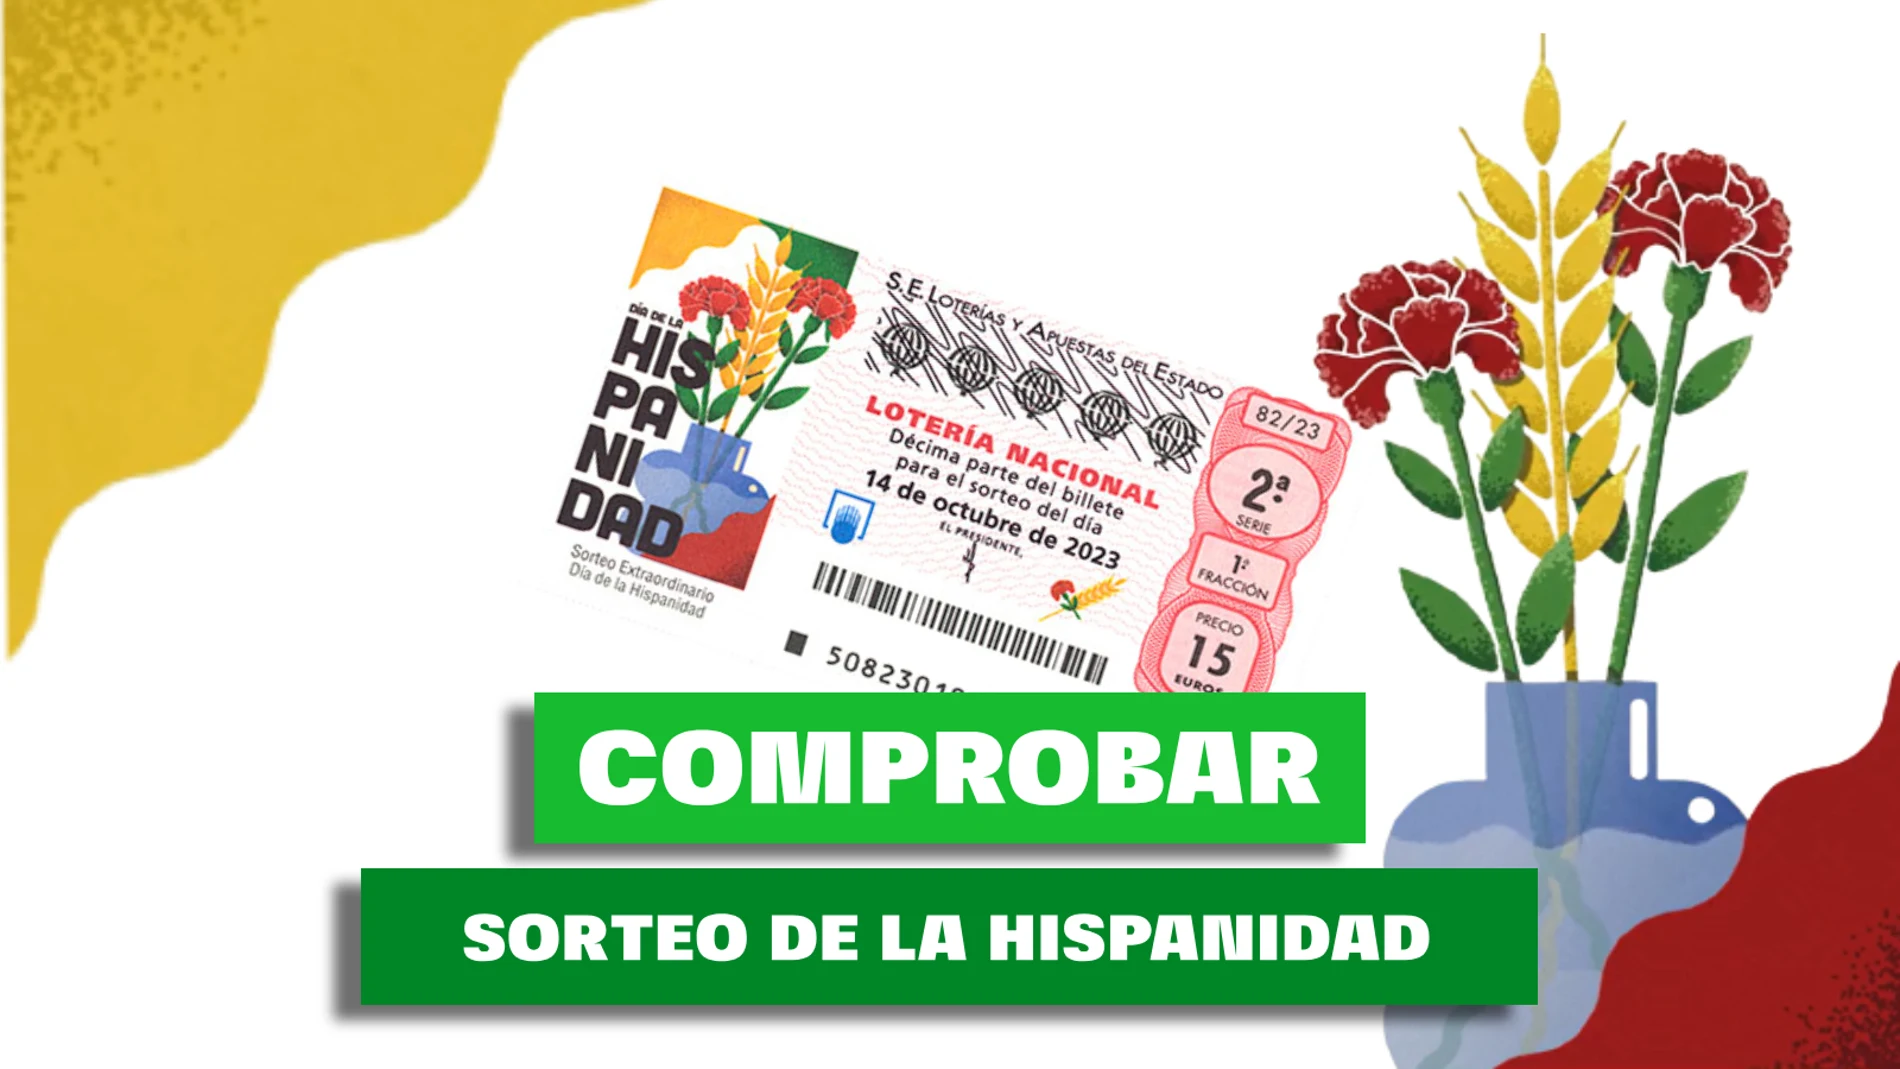 Comprobar Lotería Nacional: Sorteo Extraordinario de la Hispanidad 2023 del día 15 de octubre